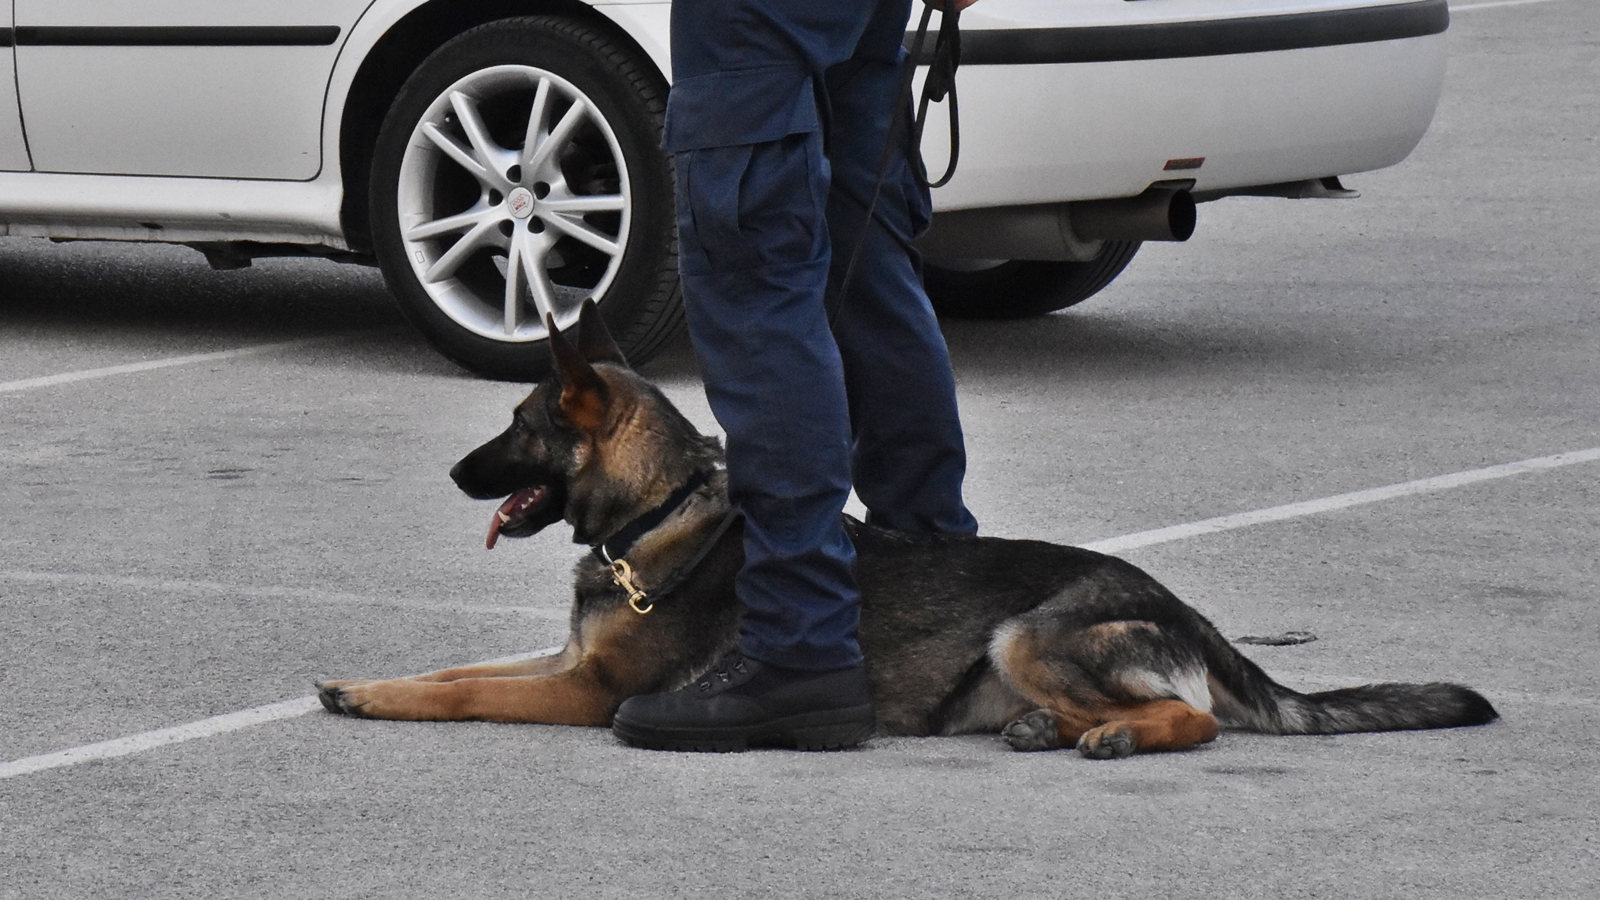 Ακύλας: Αστυνομικός σκύλος «ξετρύπωσε» κοκαΐνη σε παιδικό κάθισμα αυτοκινήτου